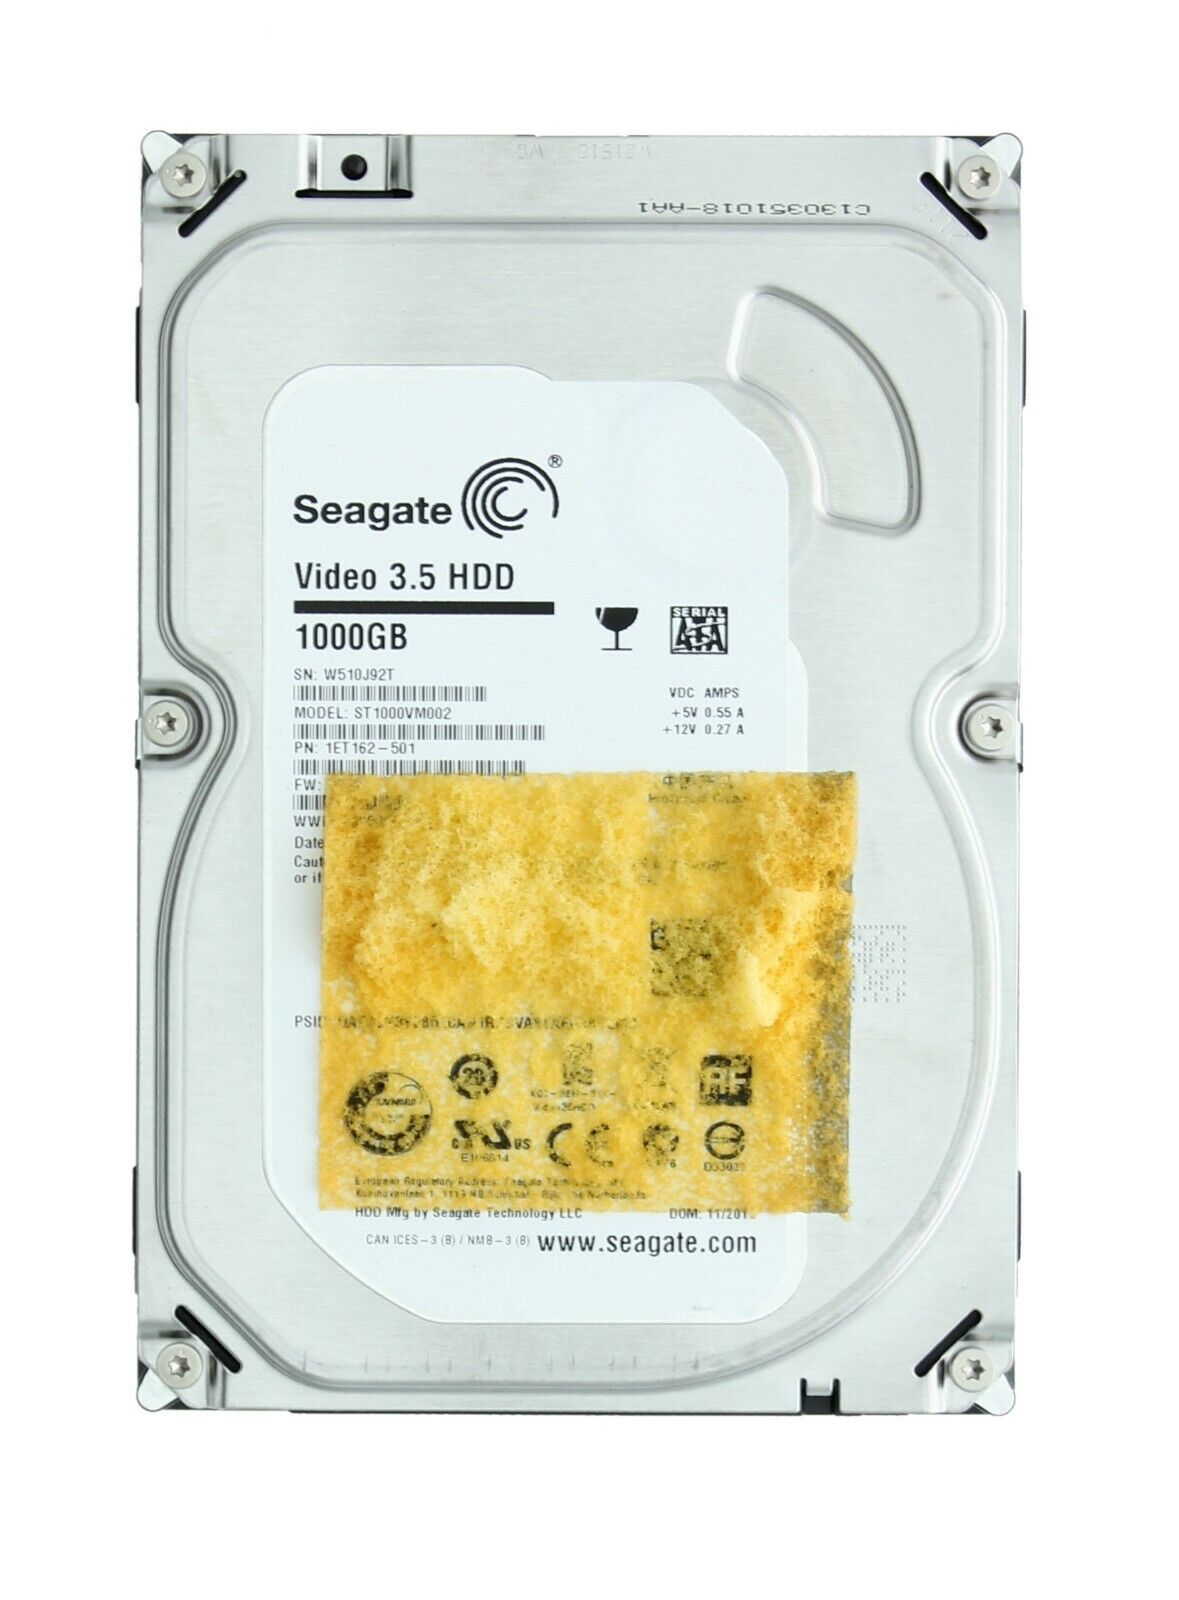 Seagate Video 3.5 Hard Drive ST1000VM002, 1000GB/1TB, SATA 6Gb/s NCQ Hard Drive